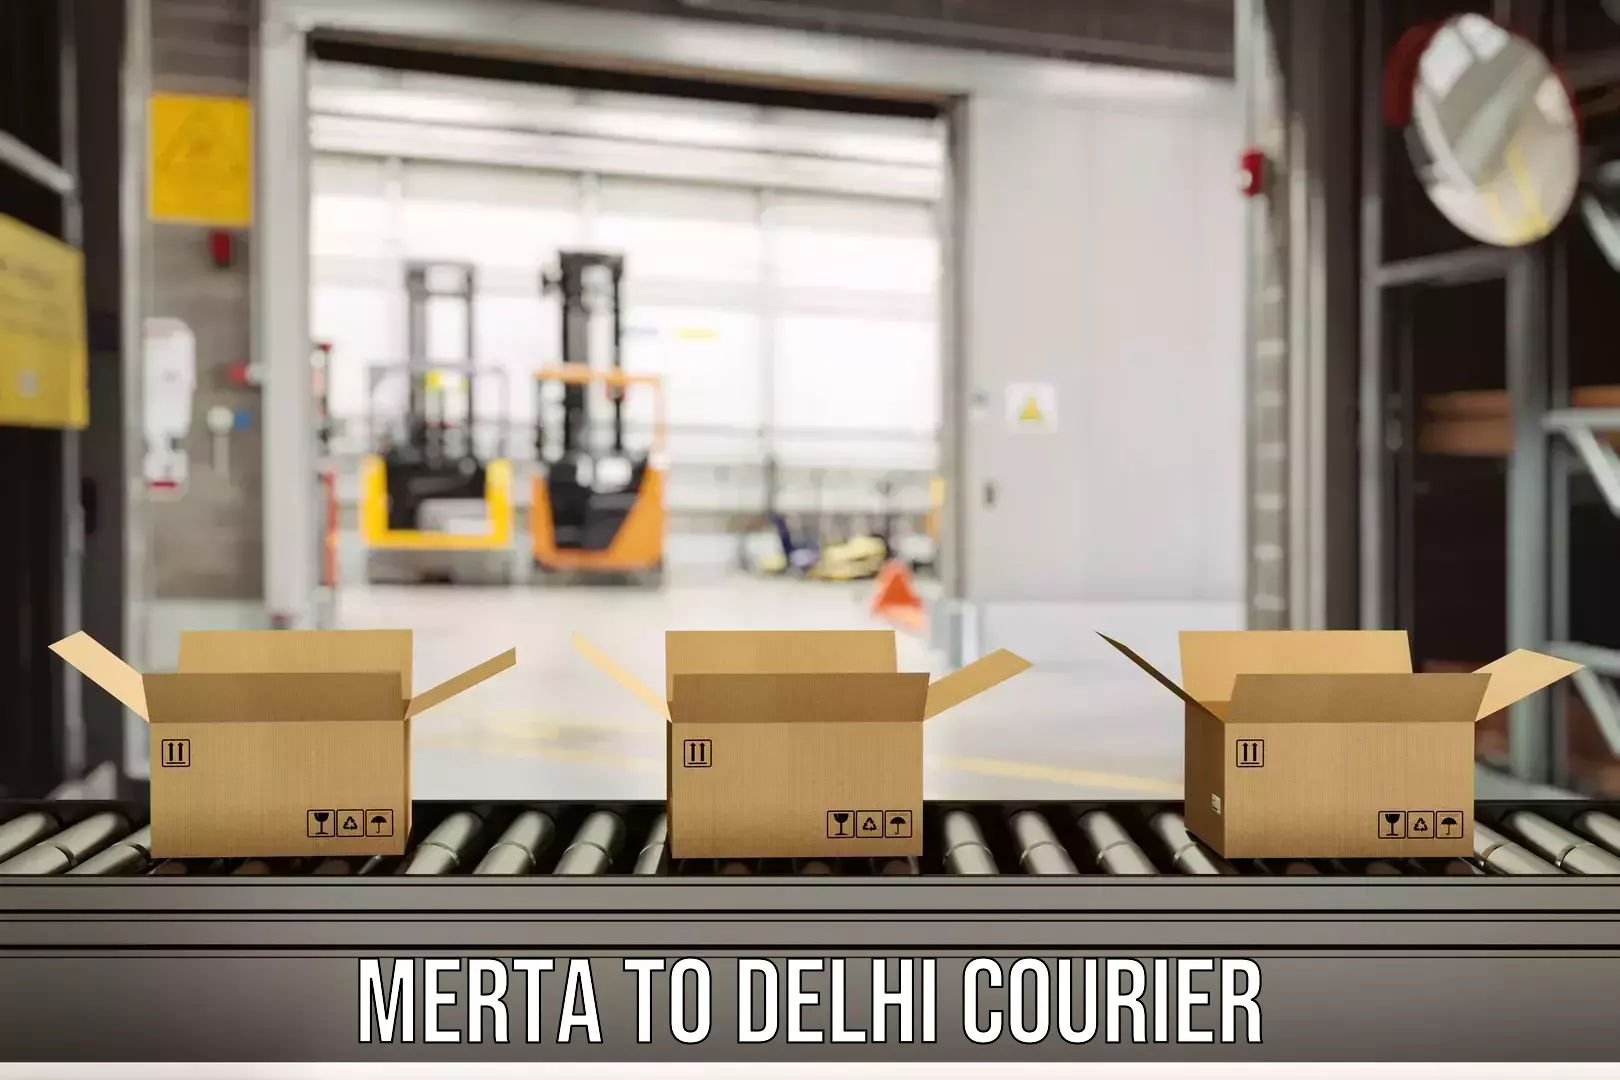 Quick dispatch service Merta to East Delhi